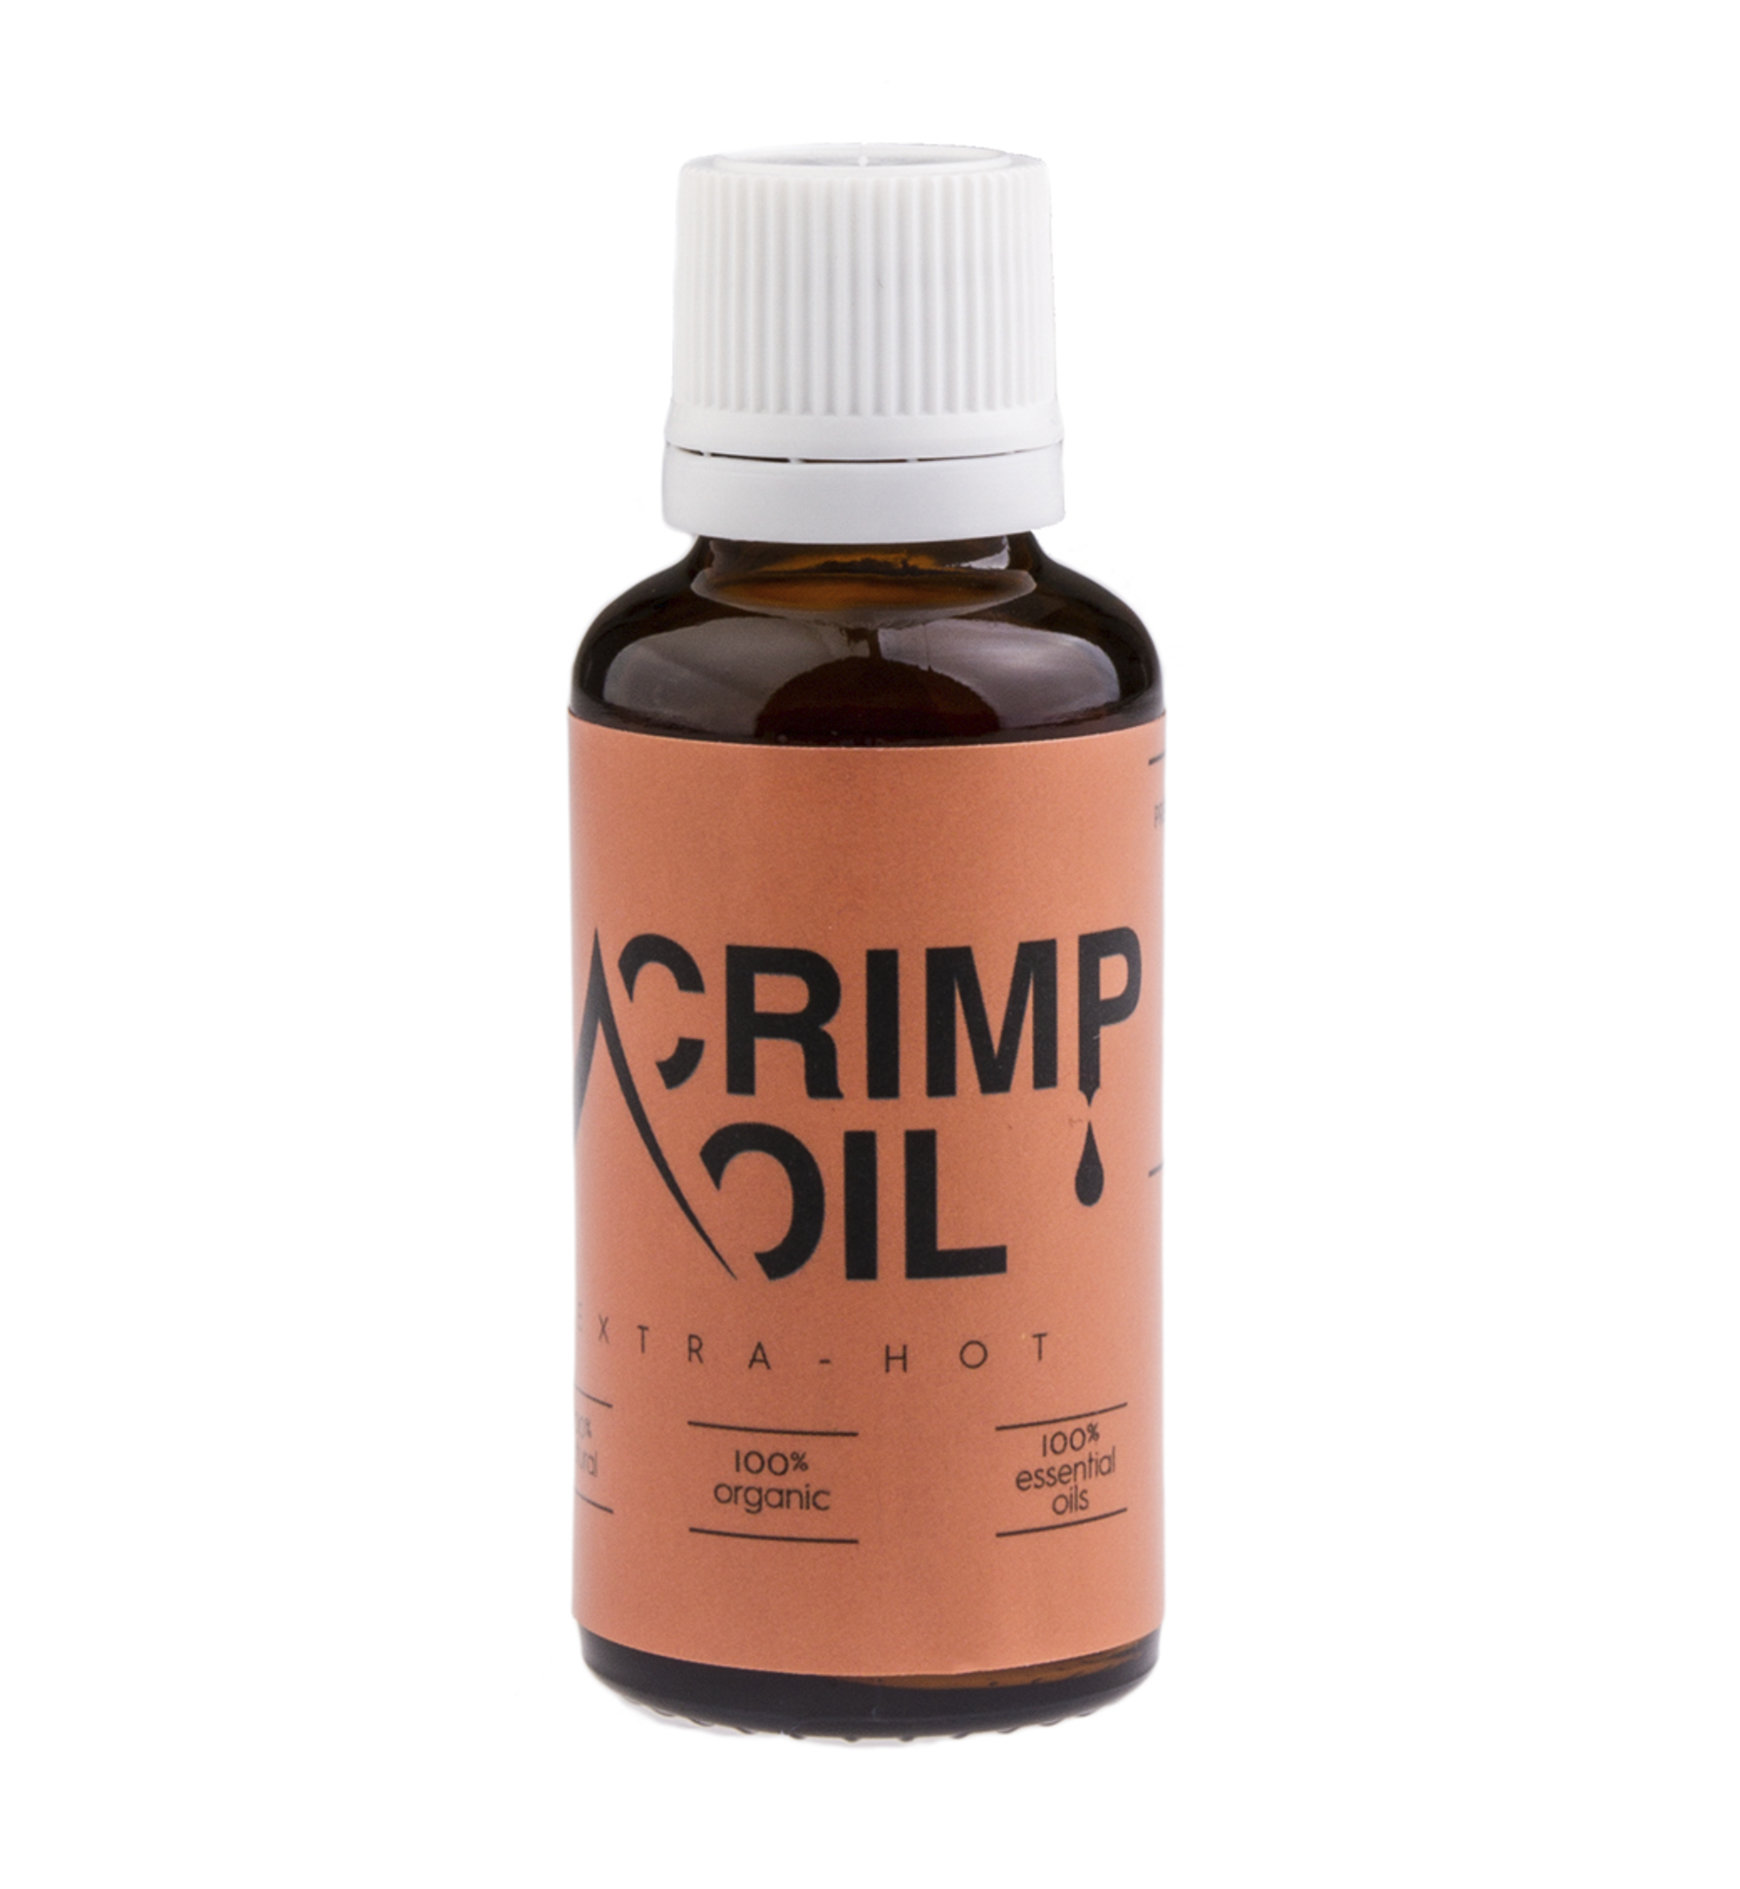 Crimp Oil Crimp Oil Extra Hot natürliche Körperpflege